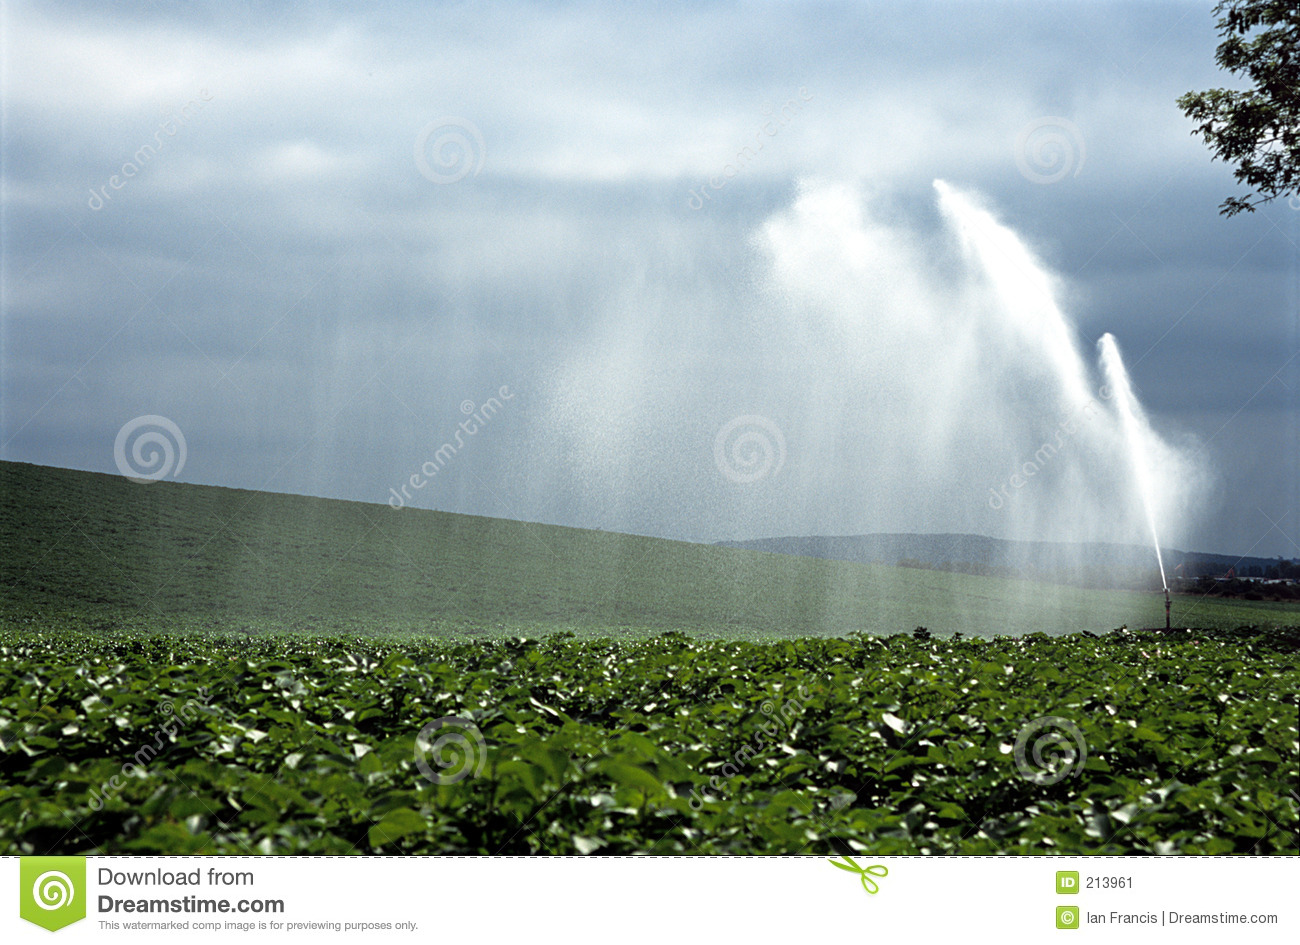 Water Crop Spraying  Stock Image   Image  213961